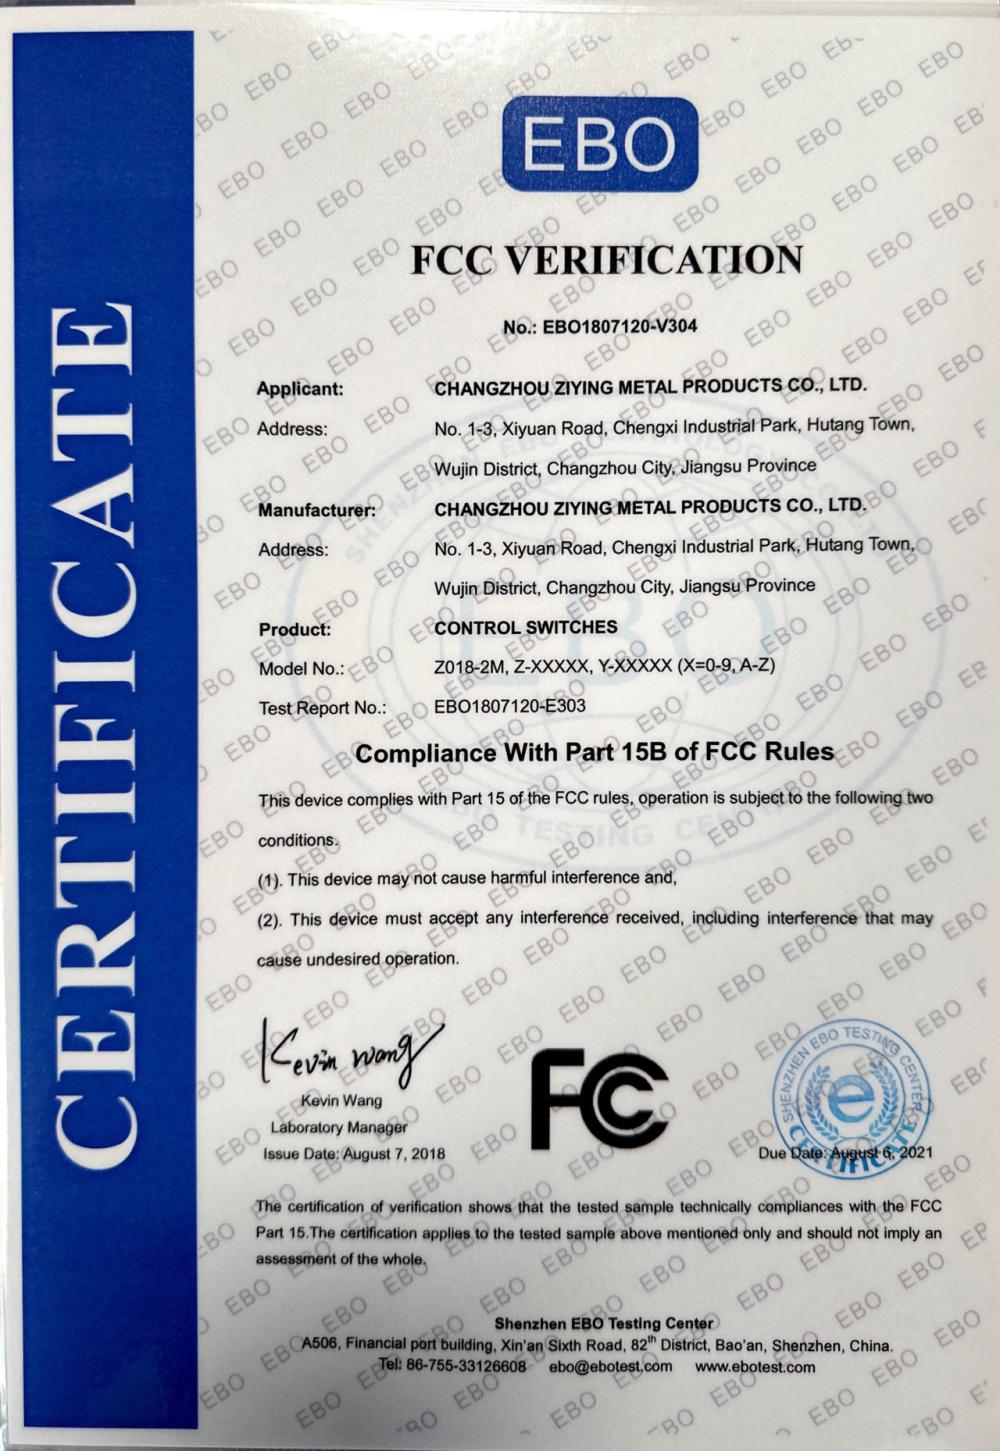 FCC VERIFICATION